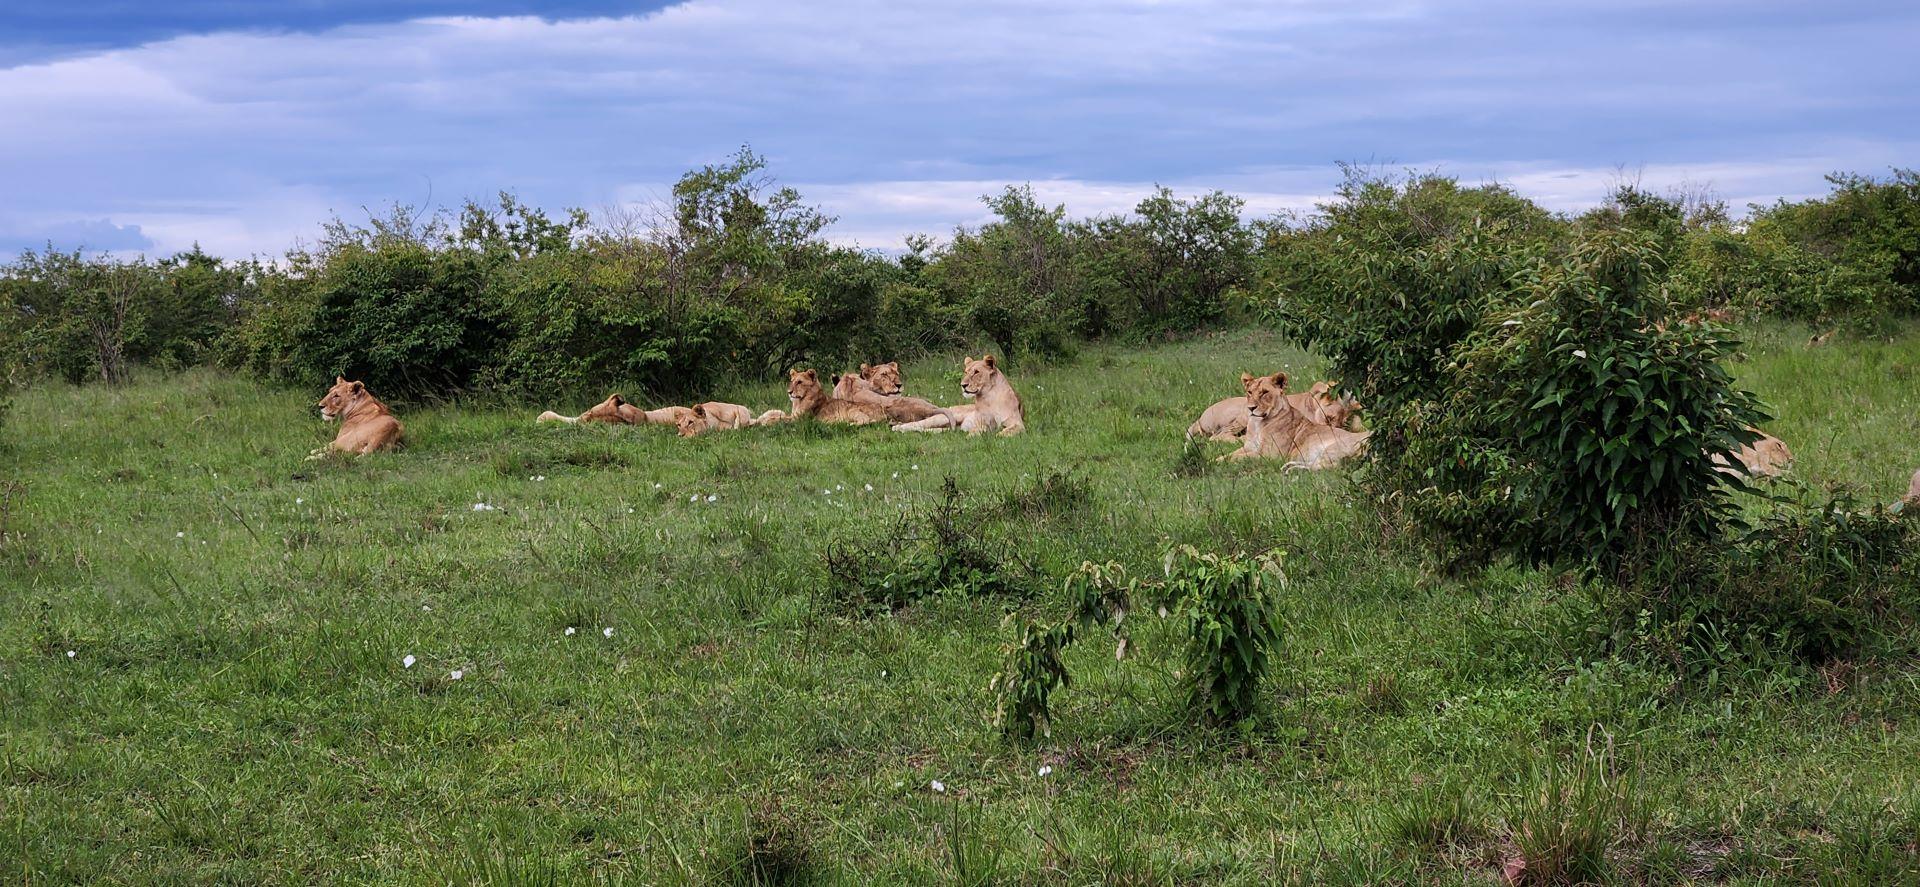 Masai mara lions - Soroi Collection